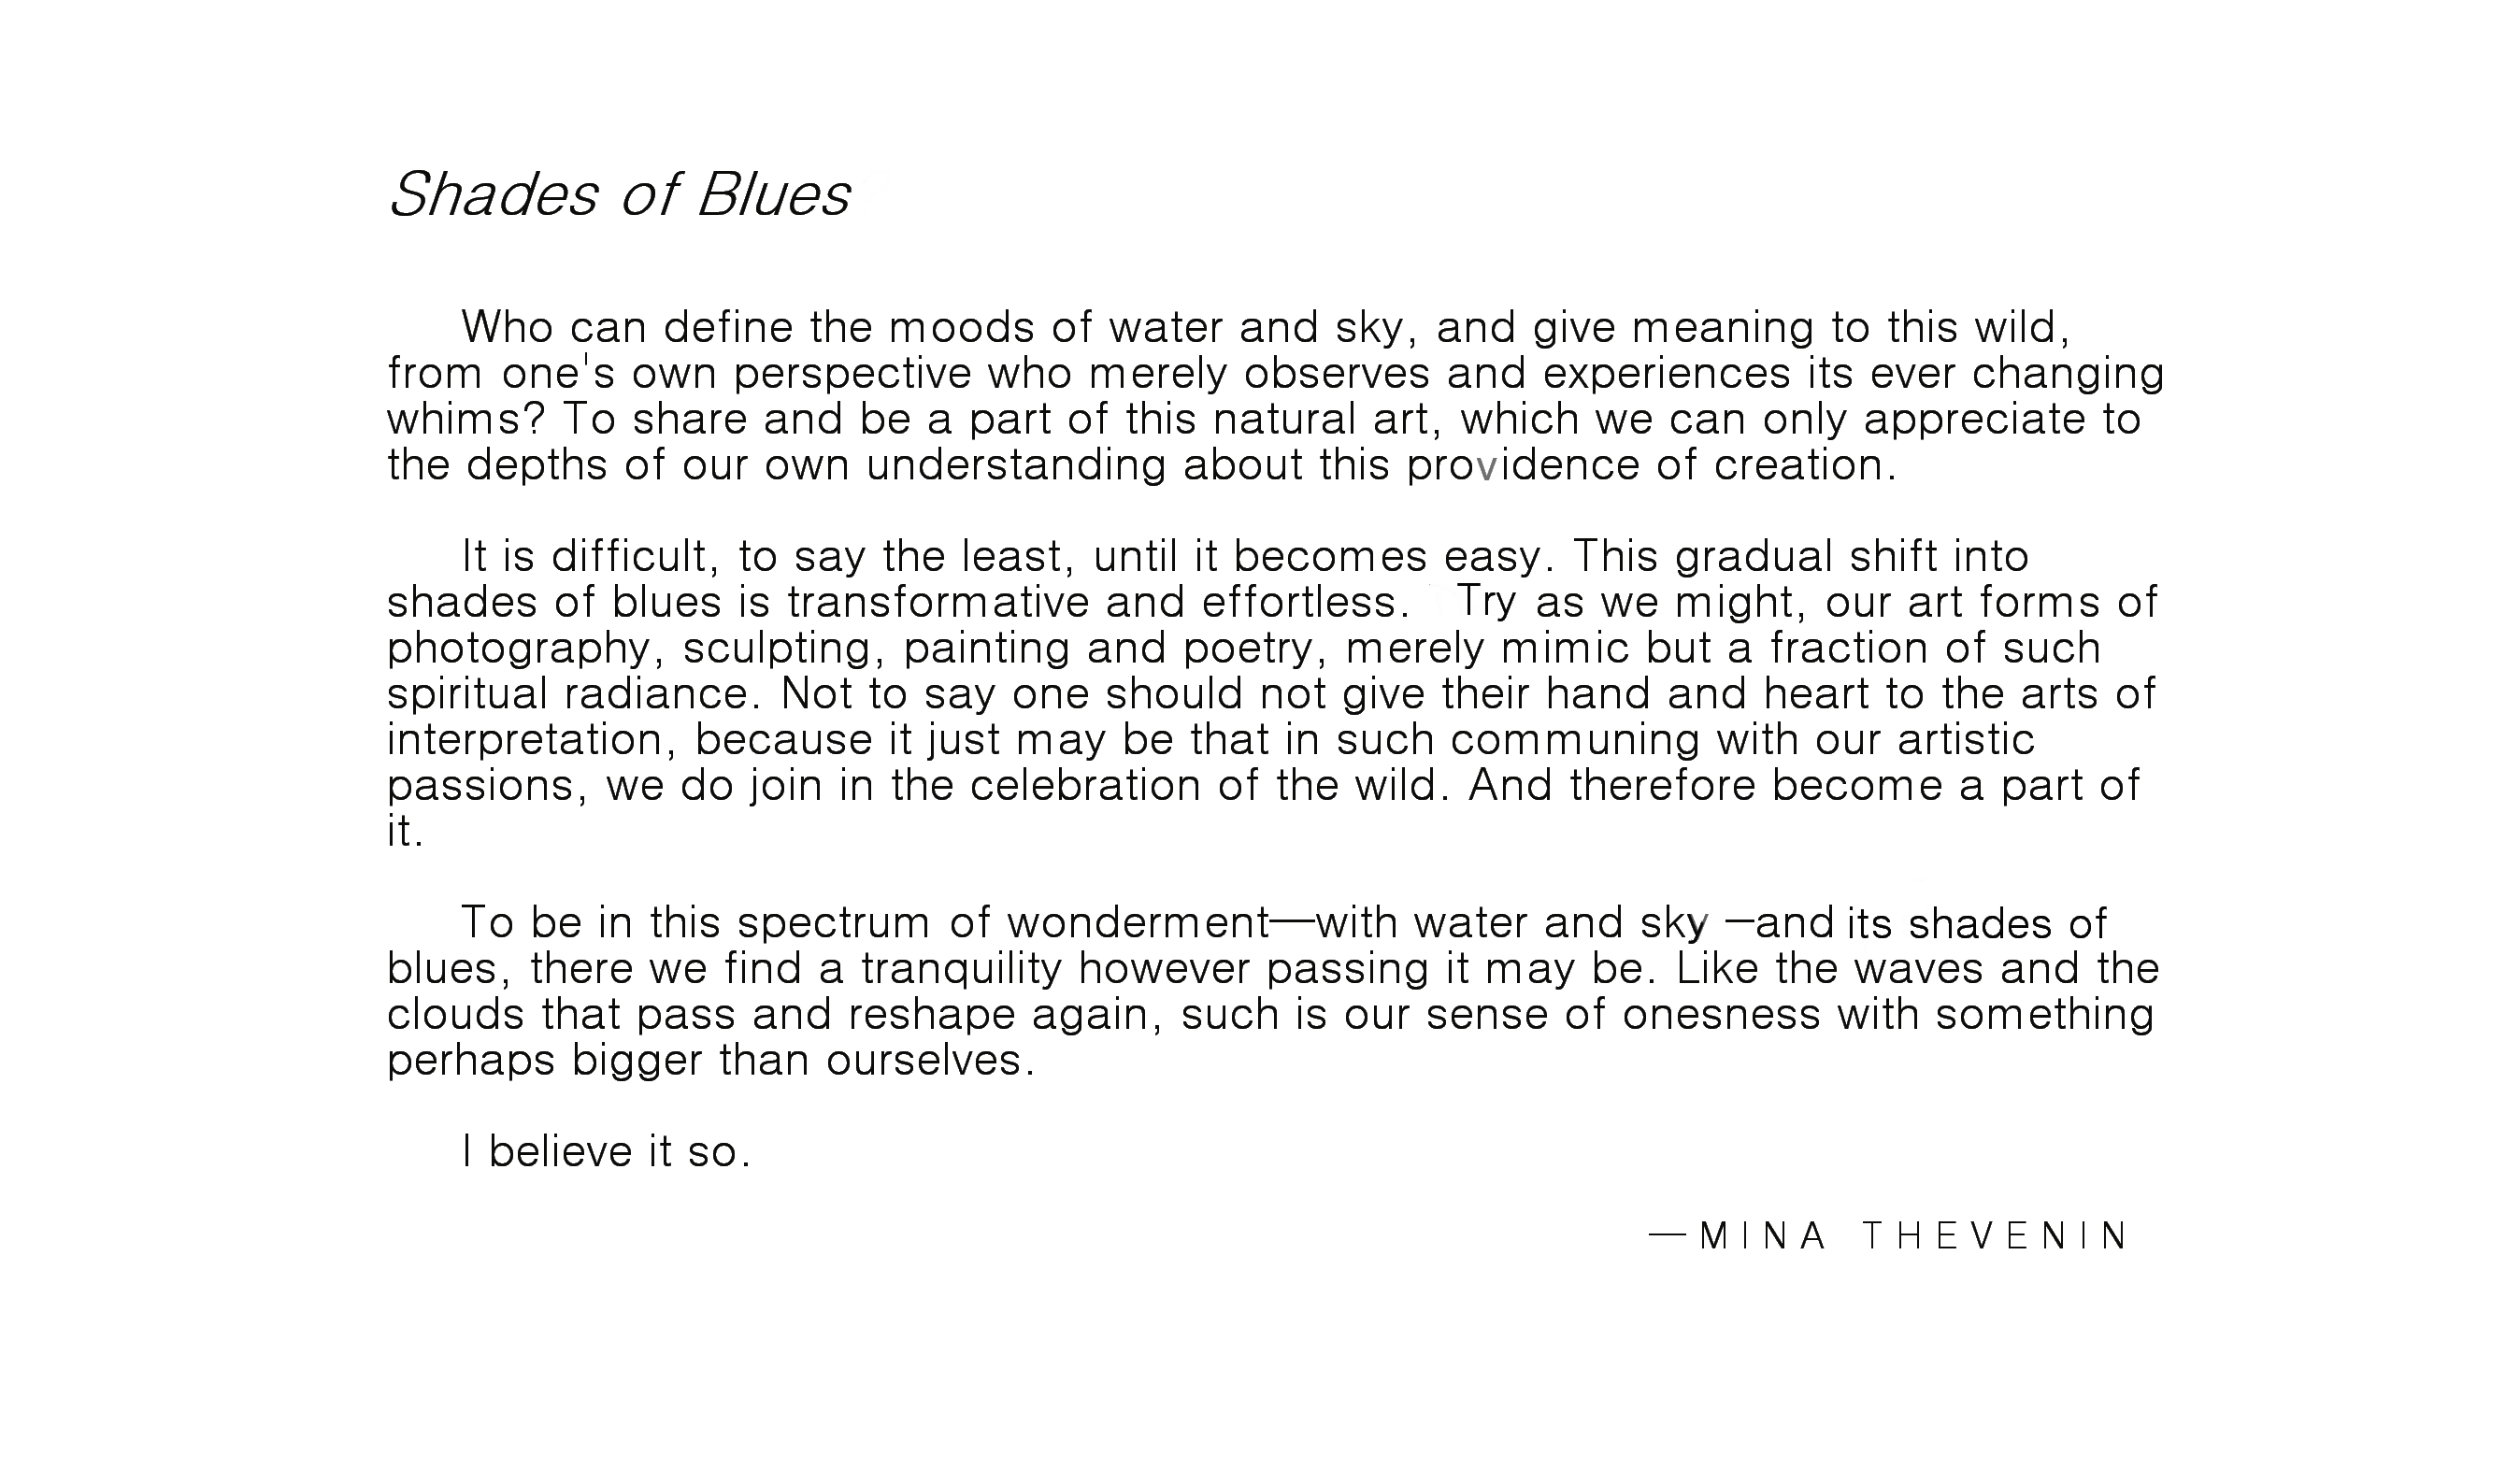 Shades of Blues by Mina Thevenin